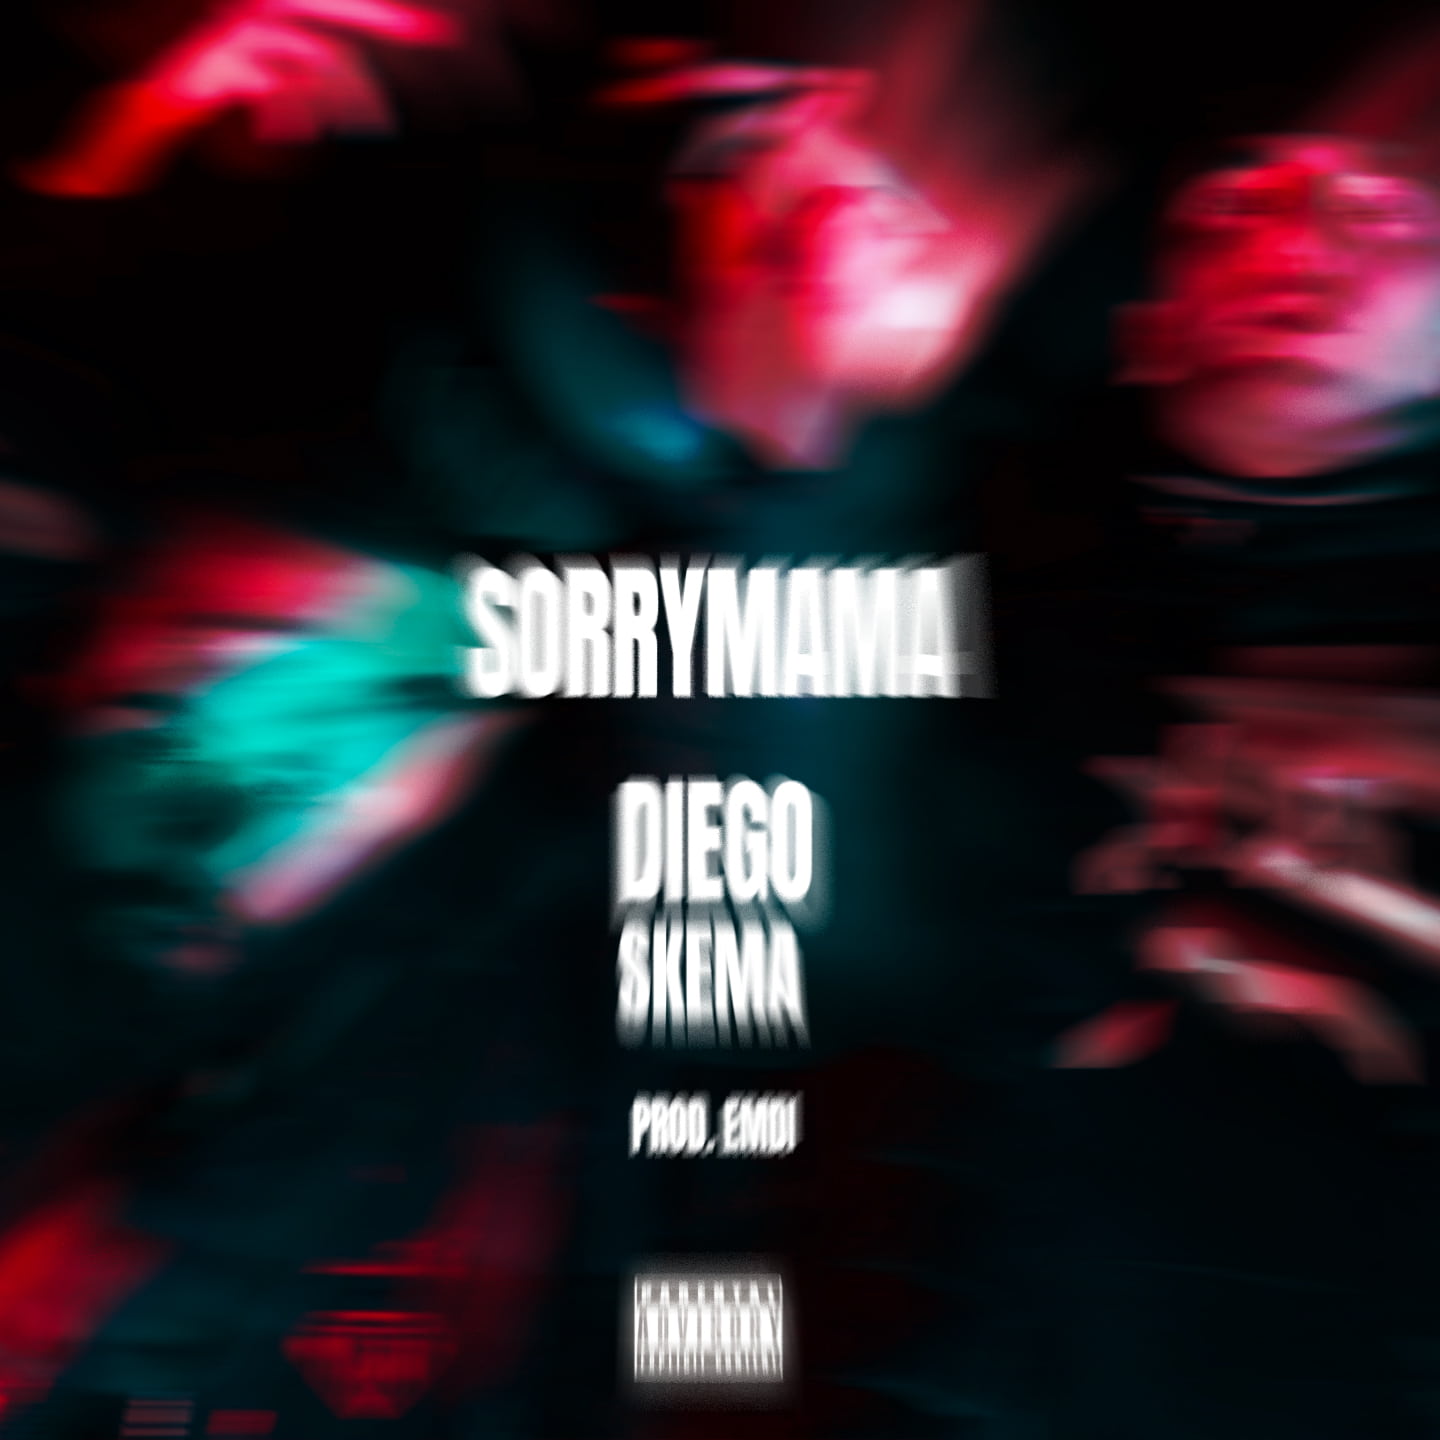 Diego pubblica il videoclip ufficiale del singolo Sorry Mama featuring Skema